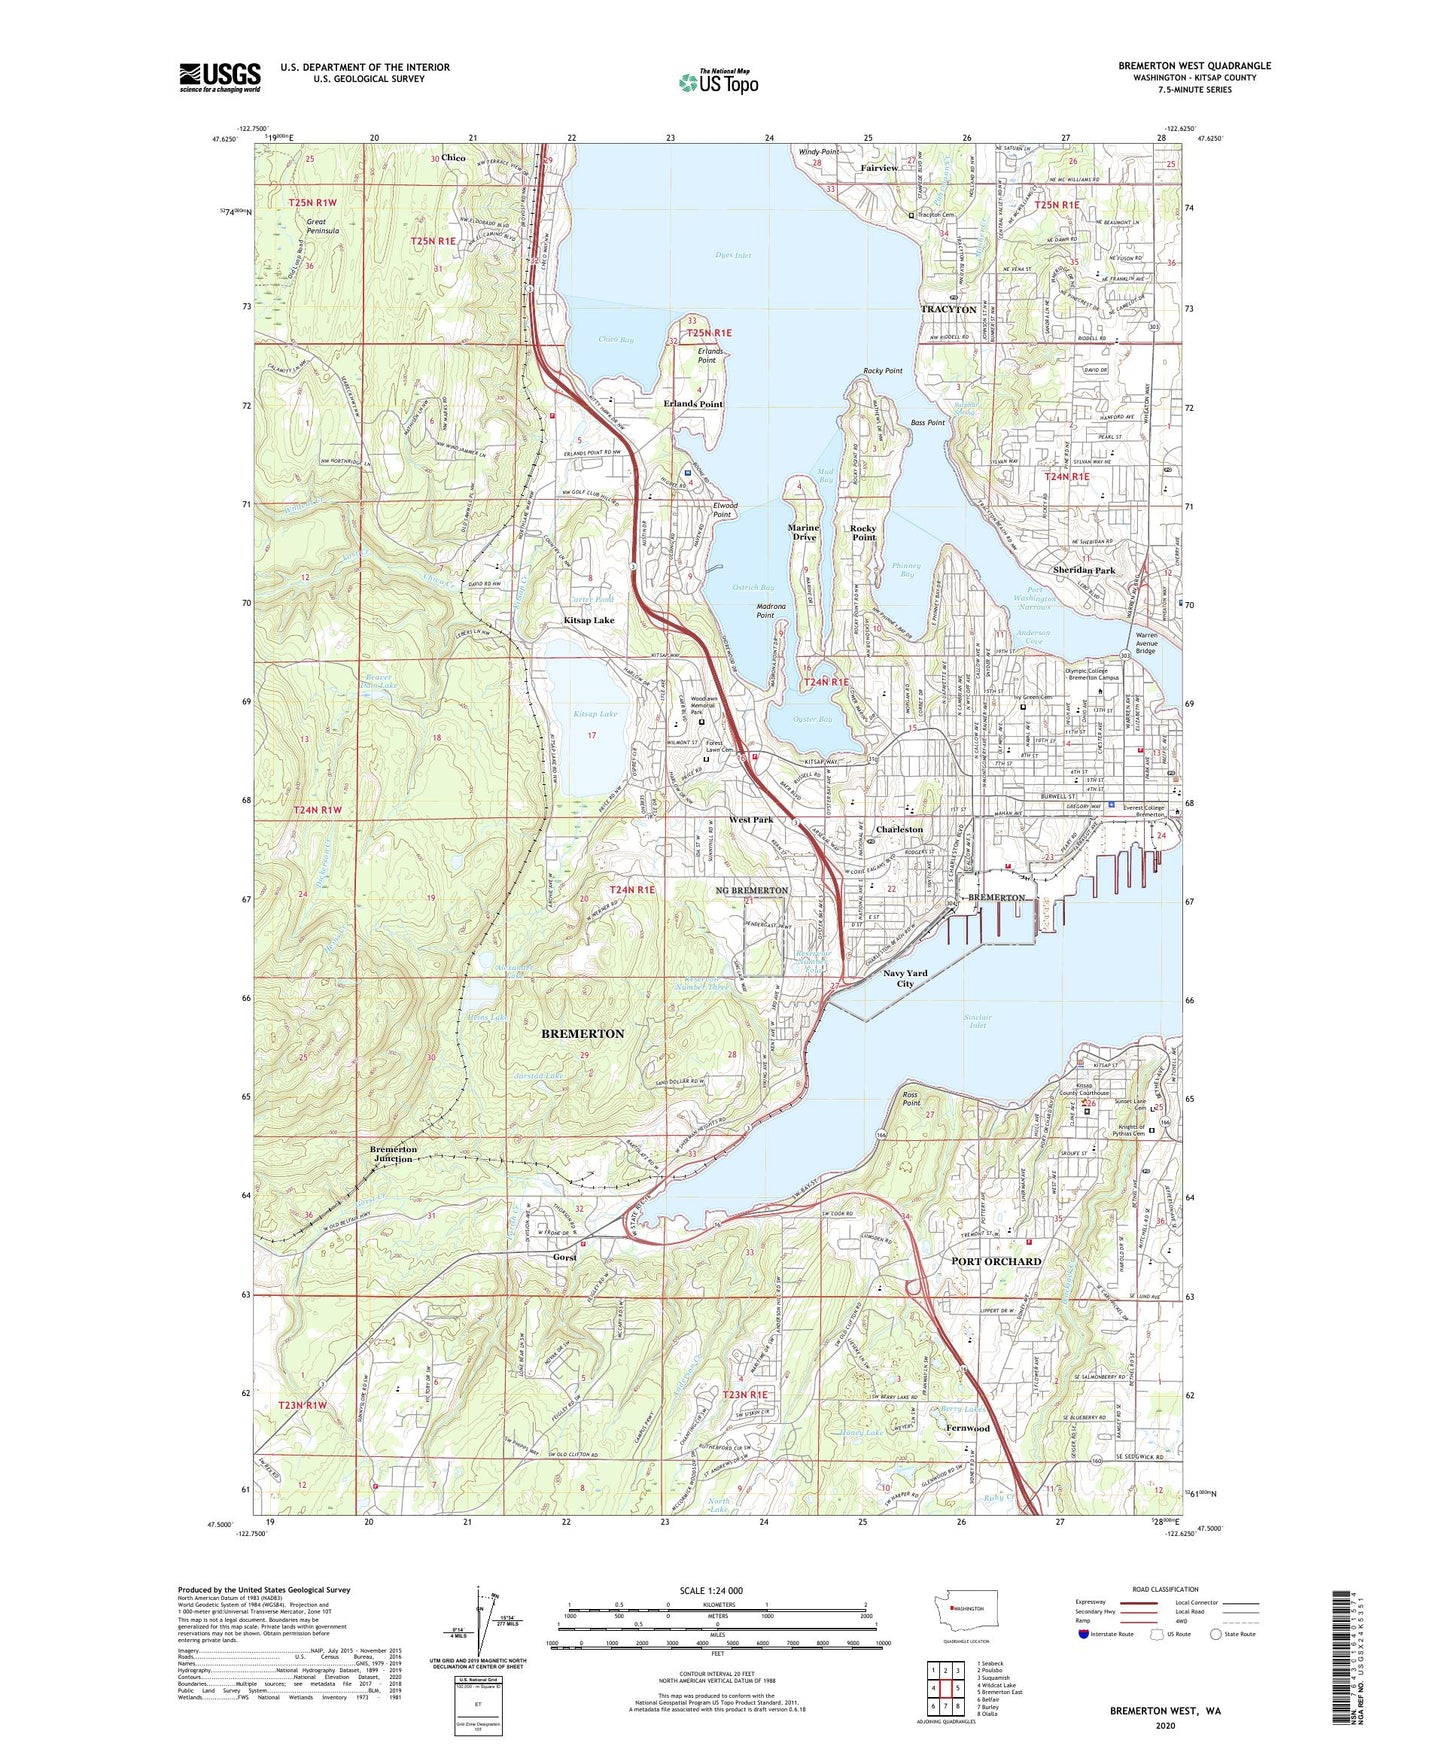 Bremerton West Washington US Topo Map Image